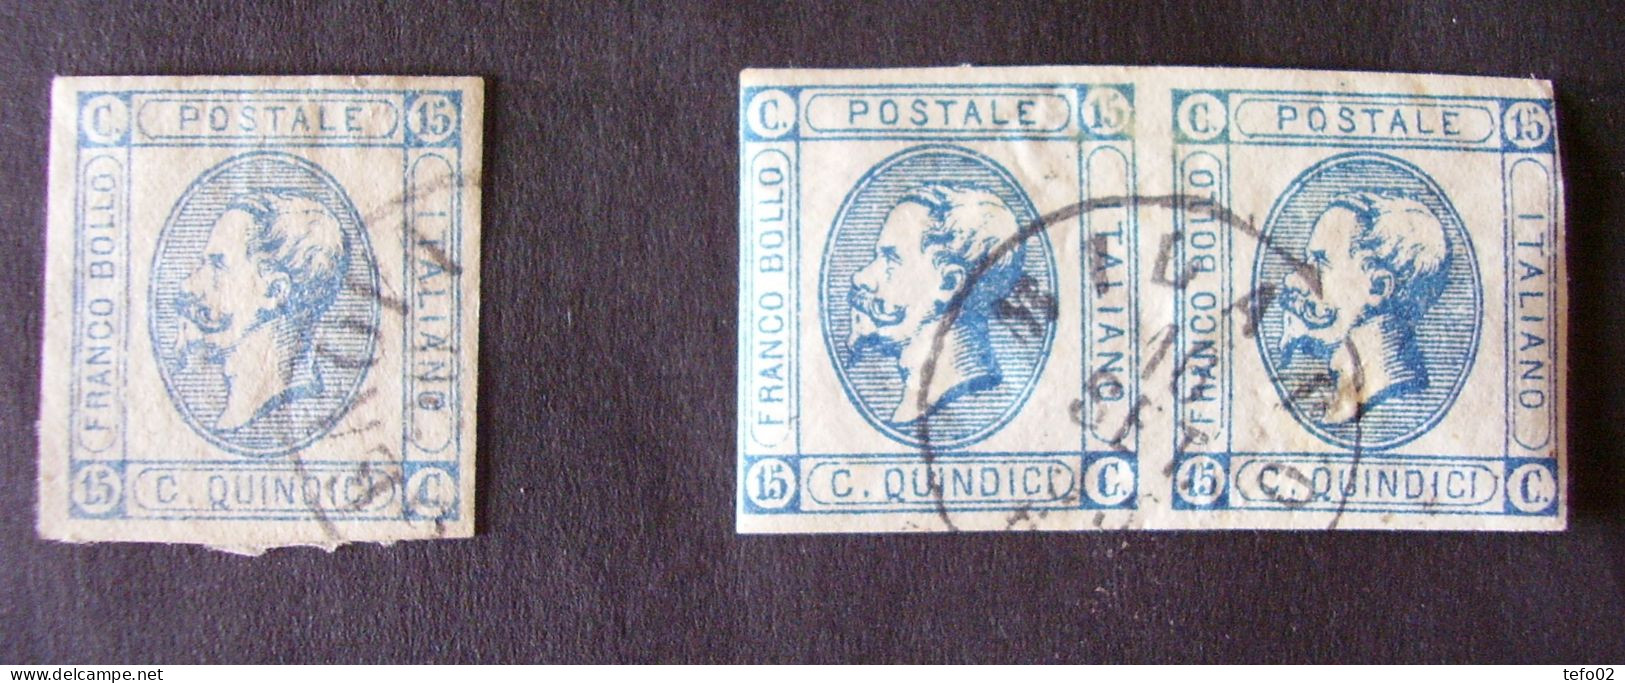 Regno V.E. II. Interessantissimo insieme di francobolli nuovi ed usati, anche con varietà INEDITE